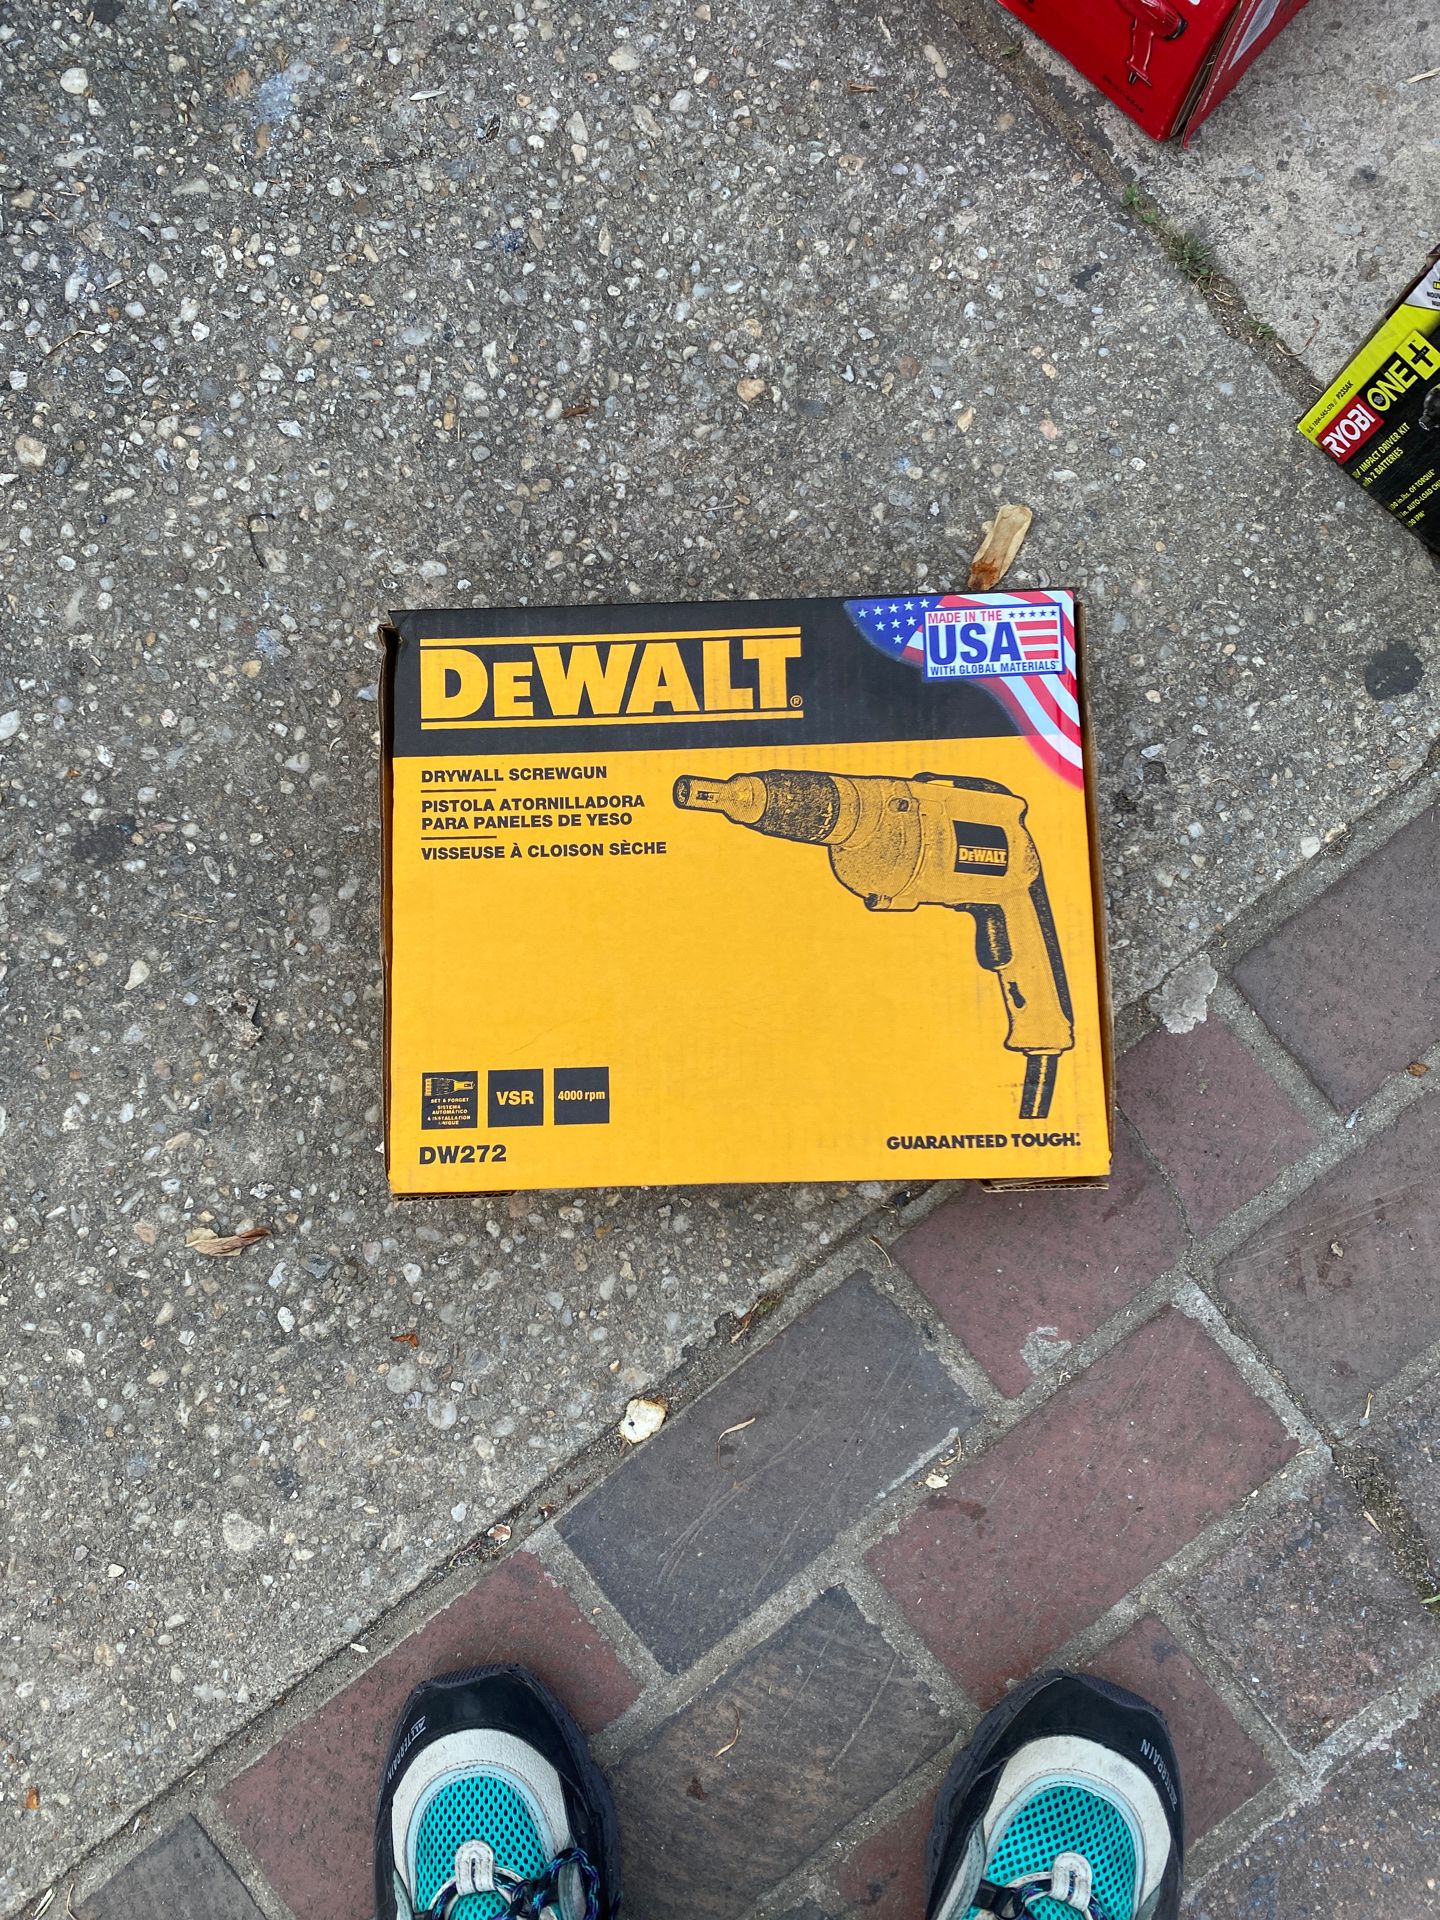 DewaLt Drywall